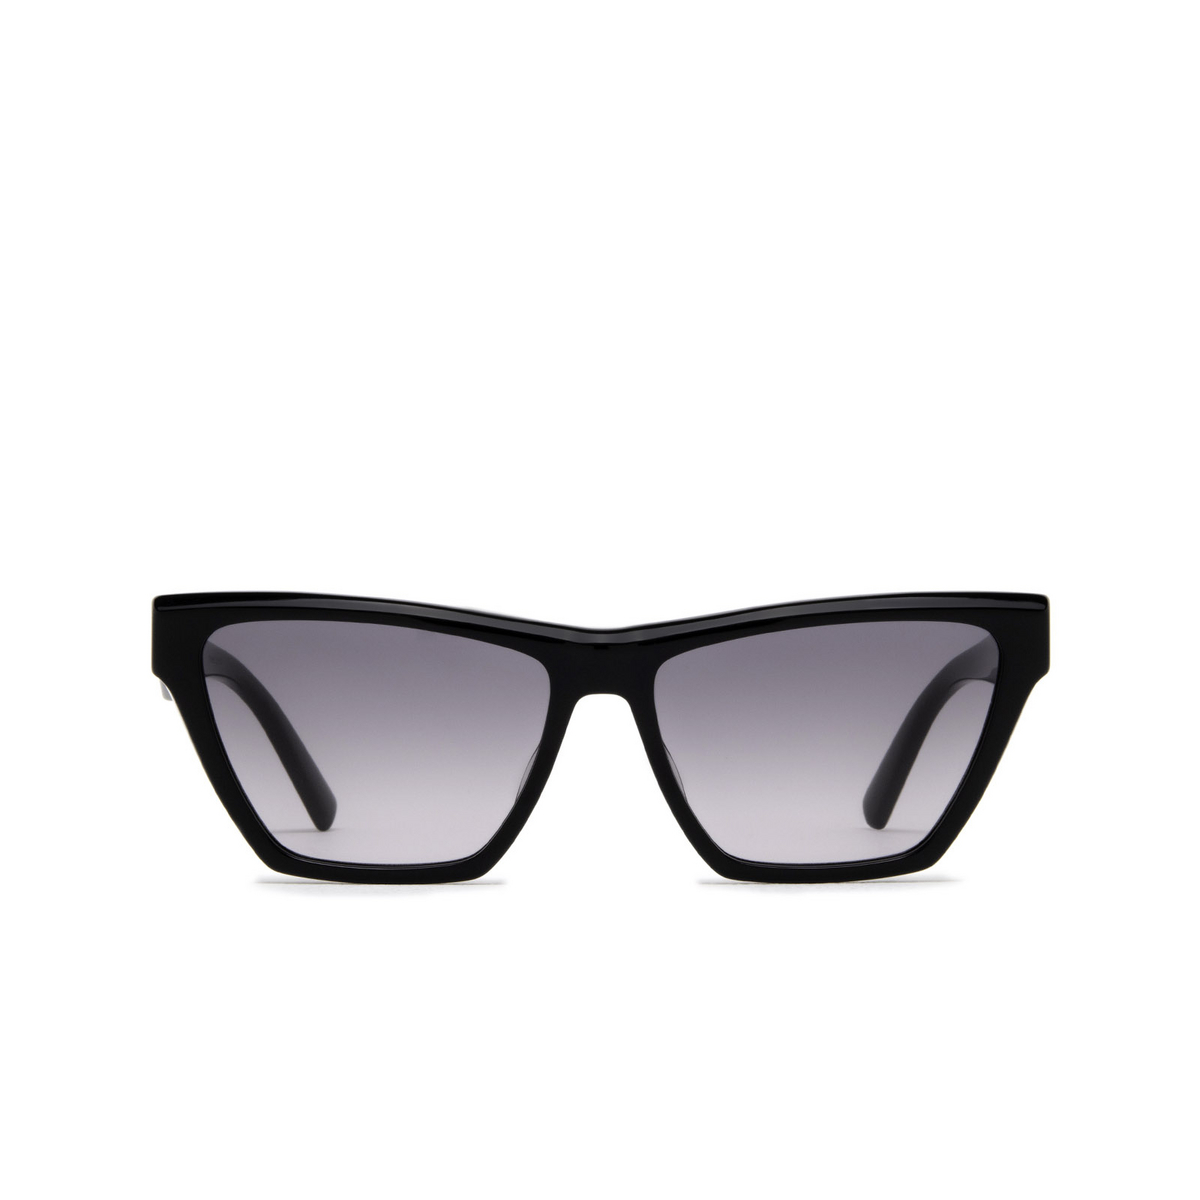 Saint Laurent® Cat-eye Sunglasses: SL M103 color Black 001 - front view.